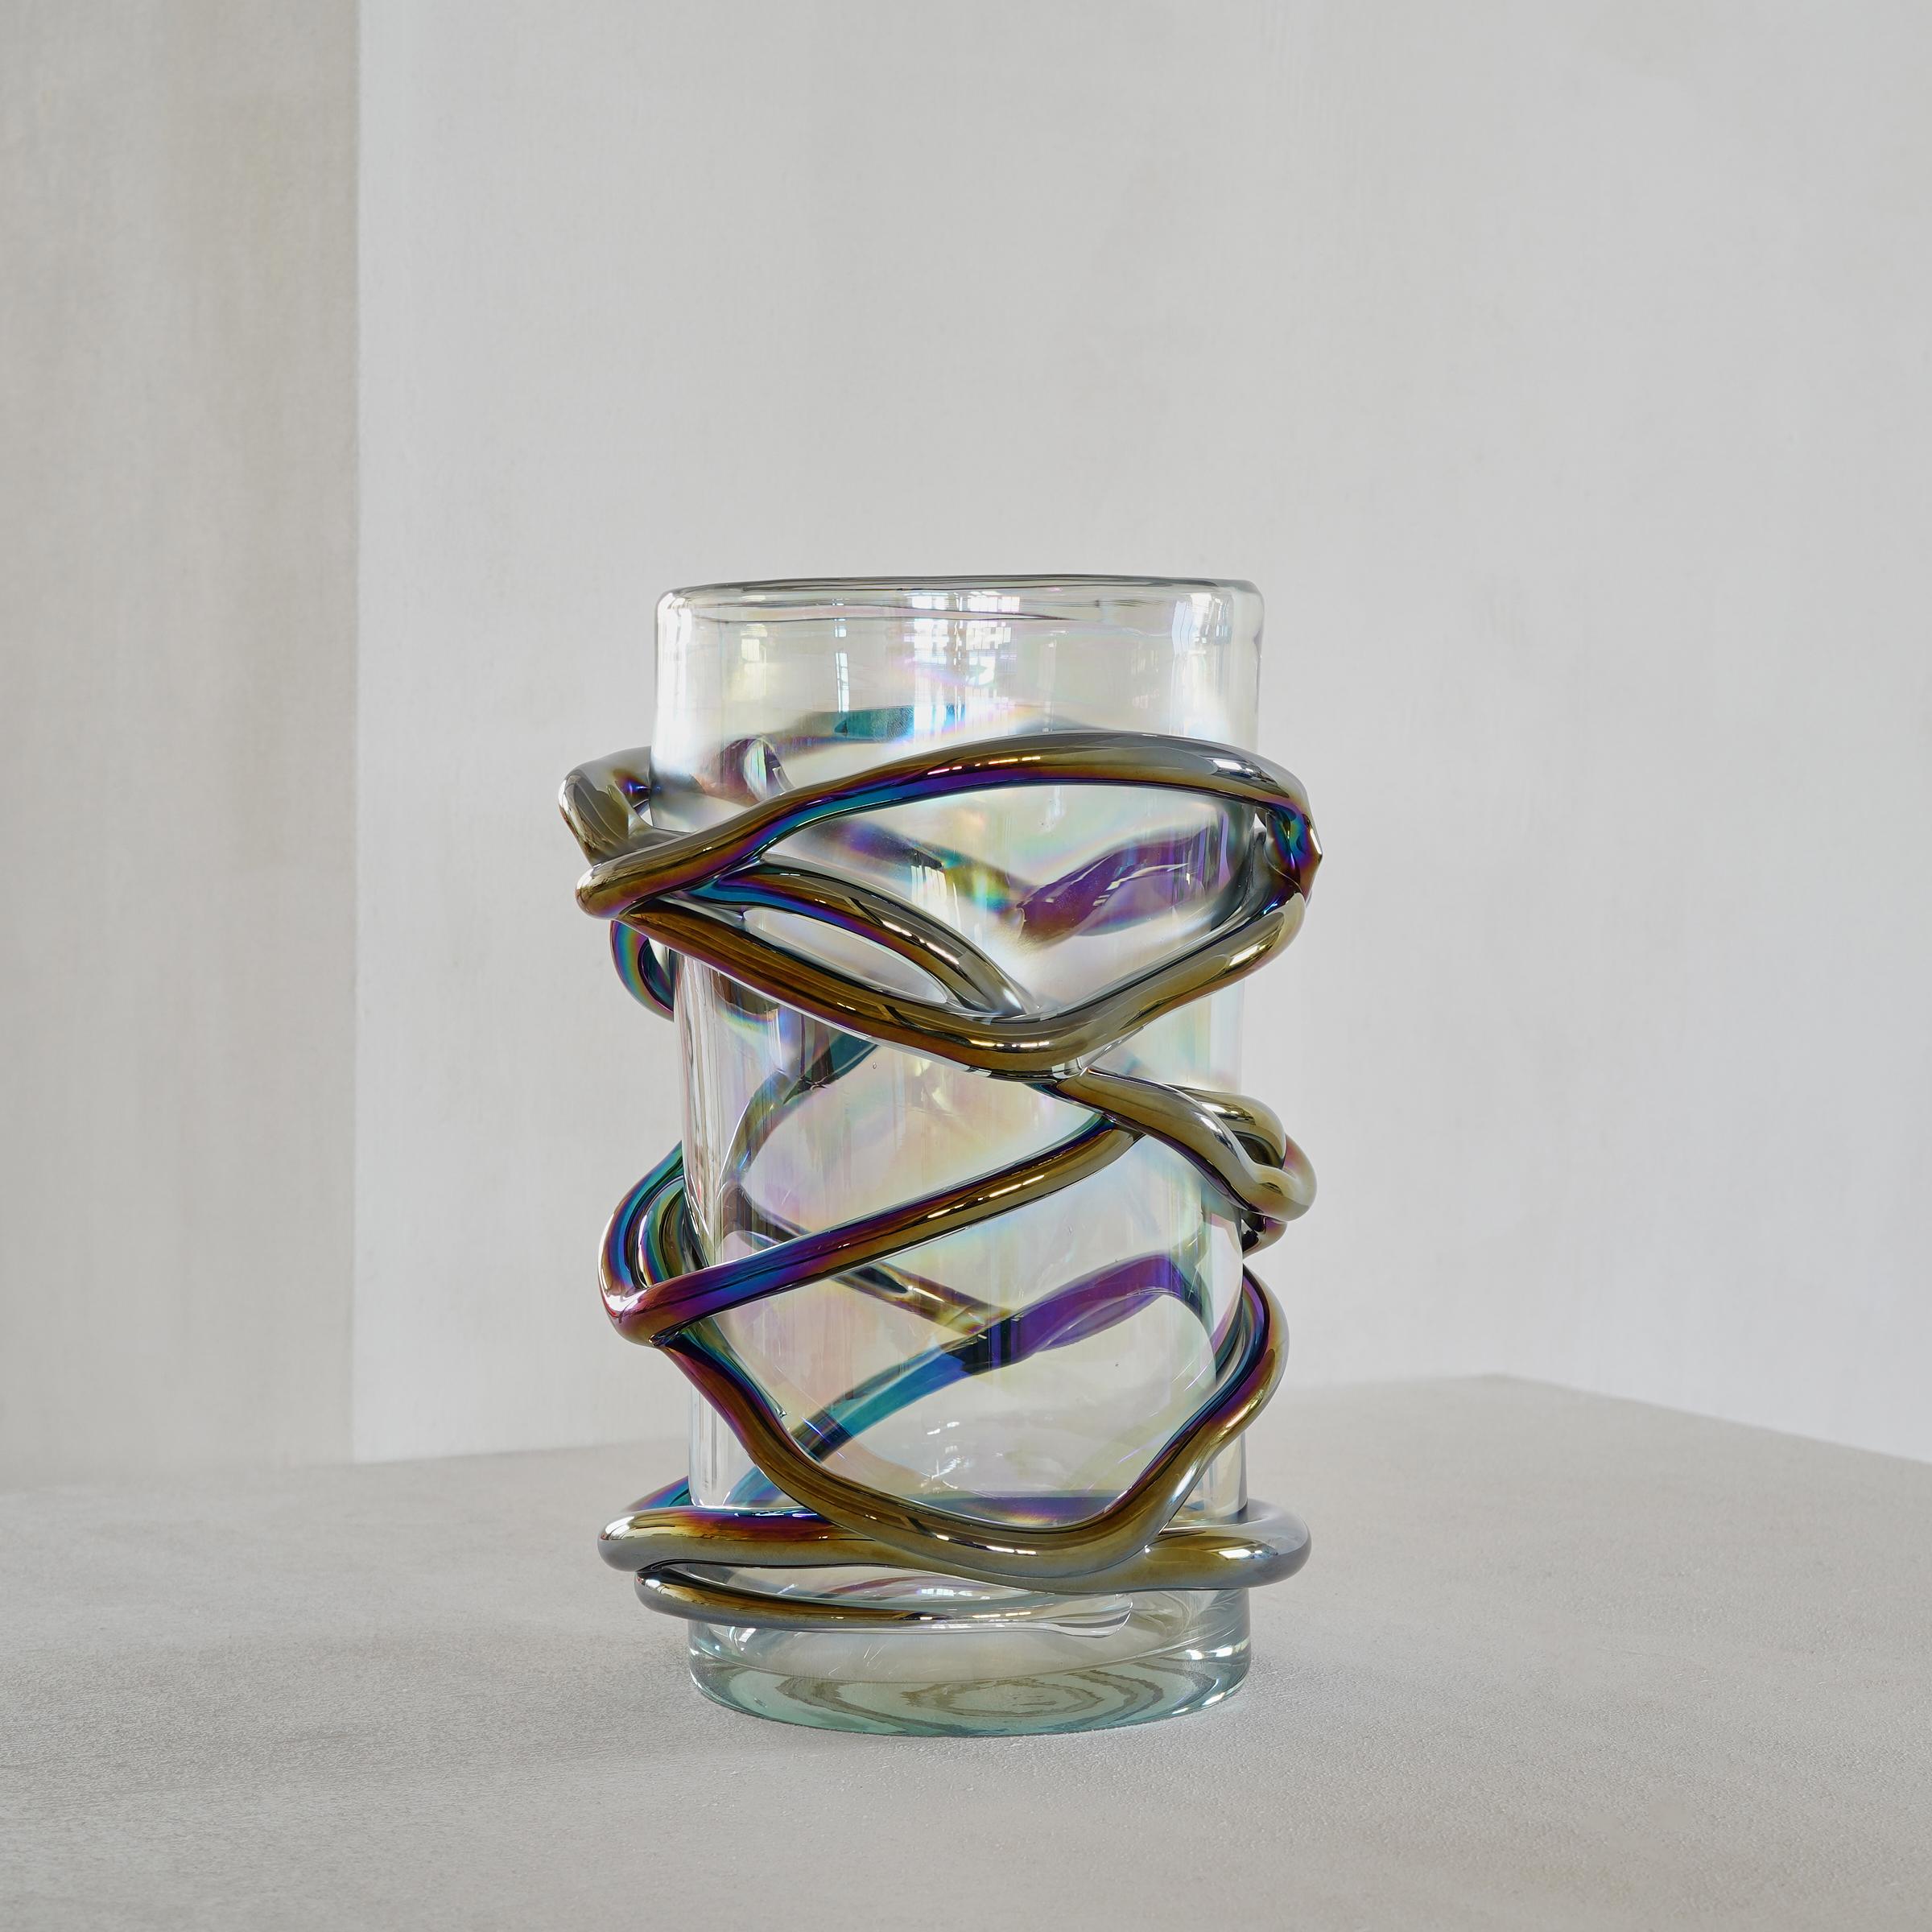 Il s'agit d'un vase en verre très unique et au design ludique, fabriqué par un atelier spécialisé dans le verre de Murano à Venise, en Italie.
 
La finition irisée des traits de verre est fantastique et s'amuse à embrasser le verre transparent. Le